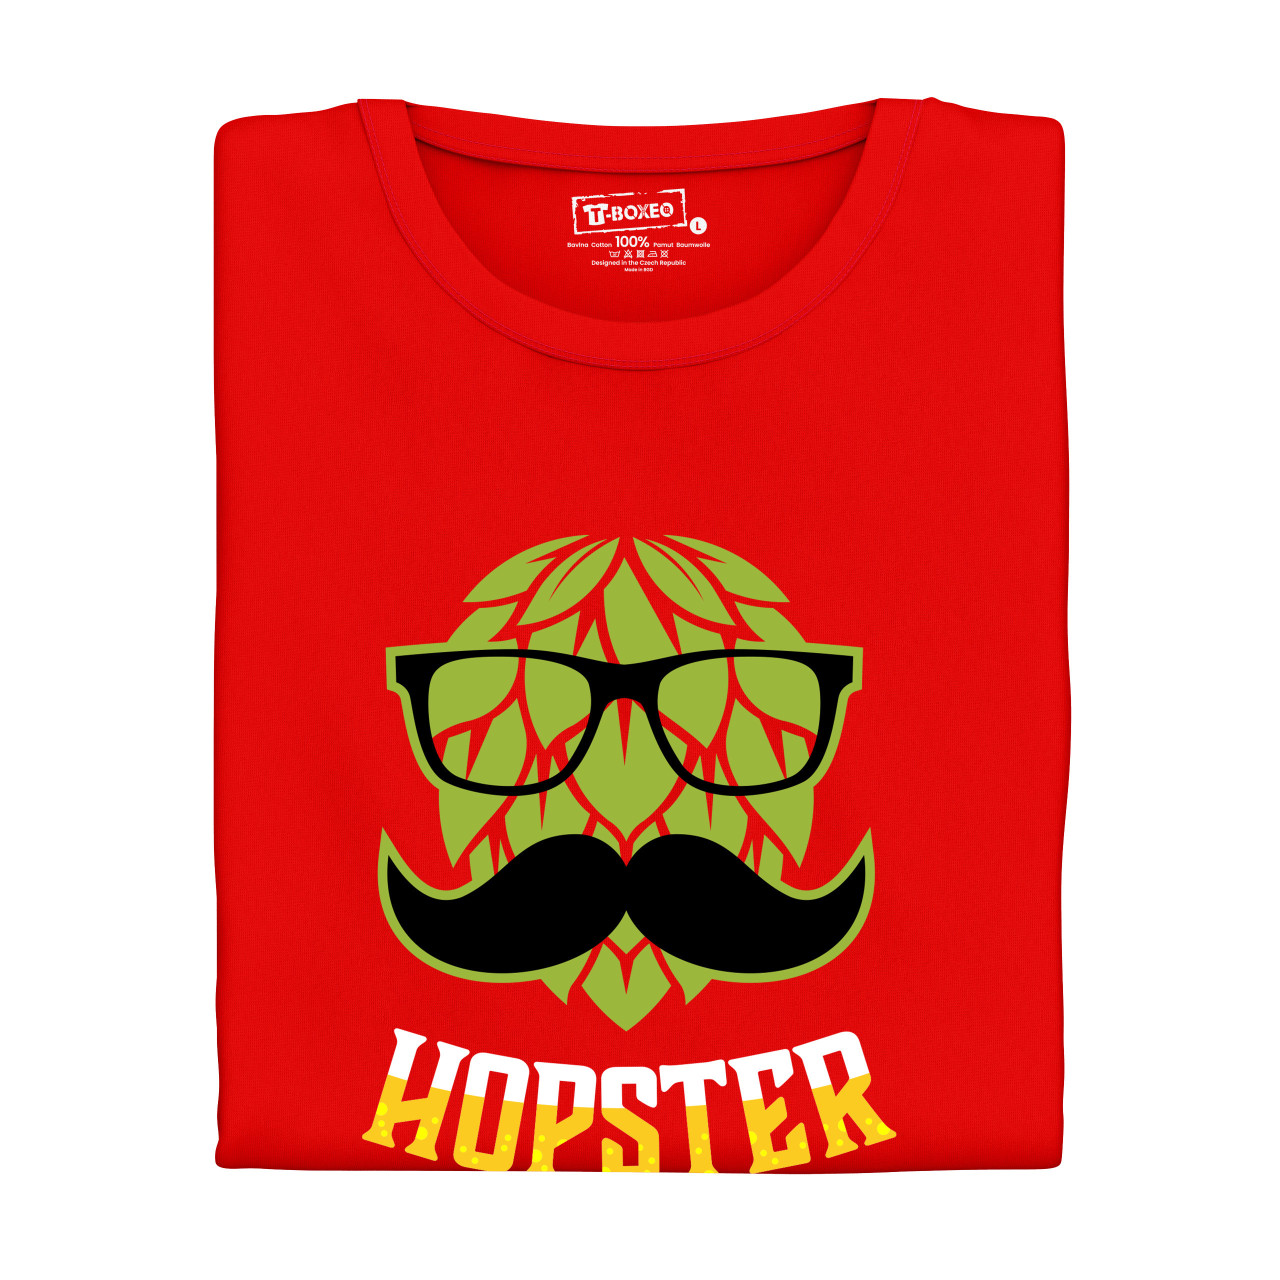 Pánské tričko s potiskem “Hopster”